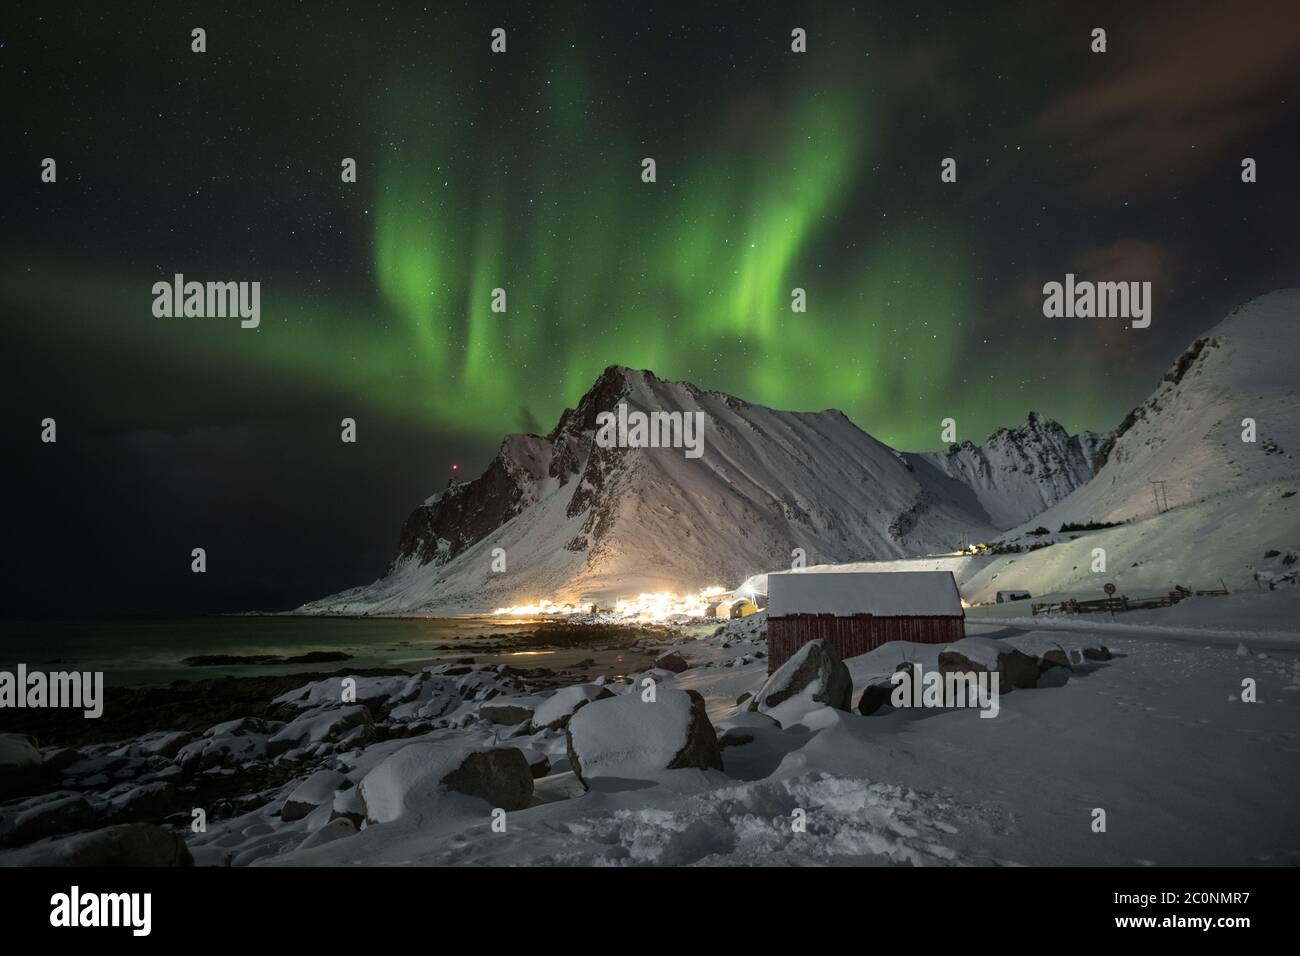 Luces increibles fotografías e imágenes de alta resolución - Alamy